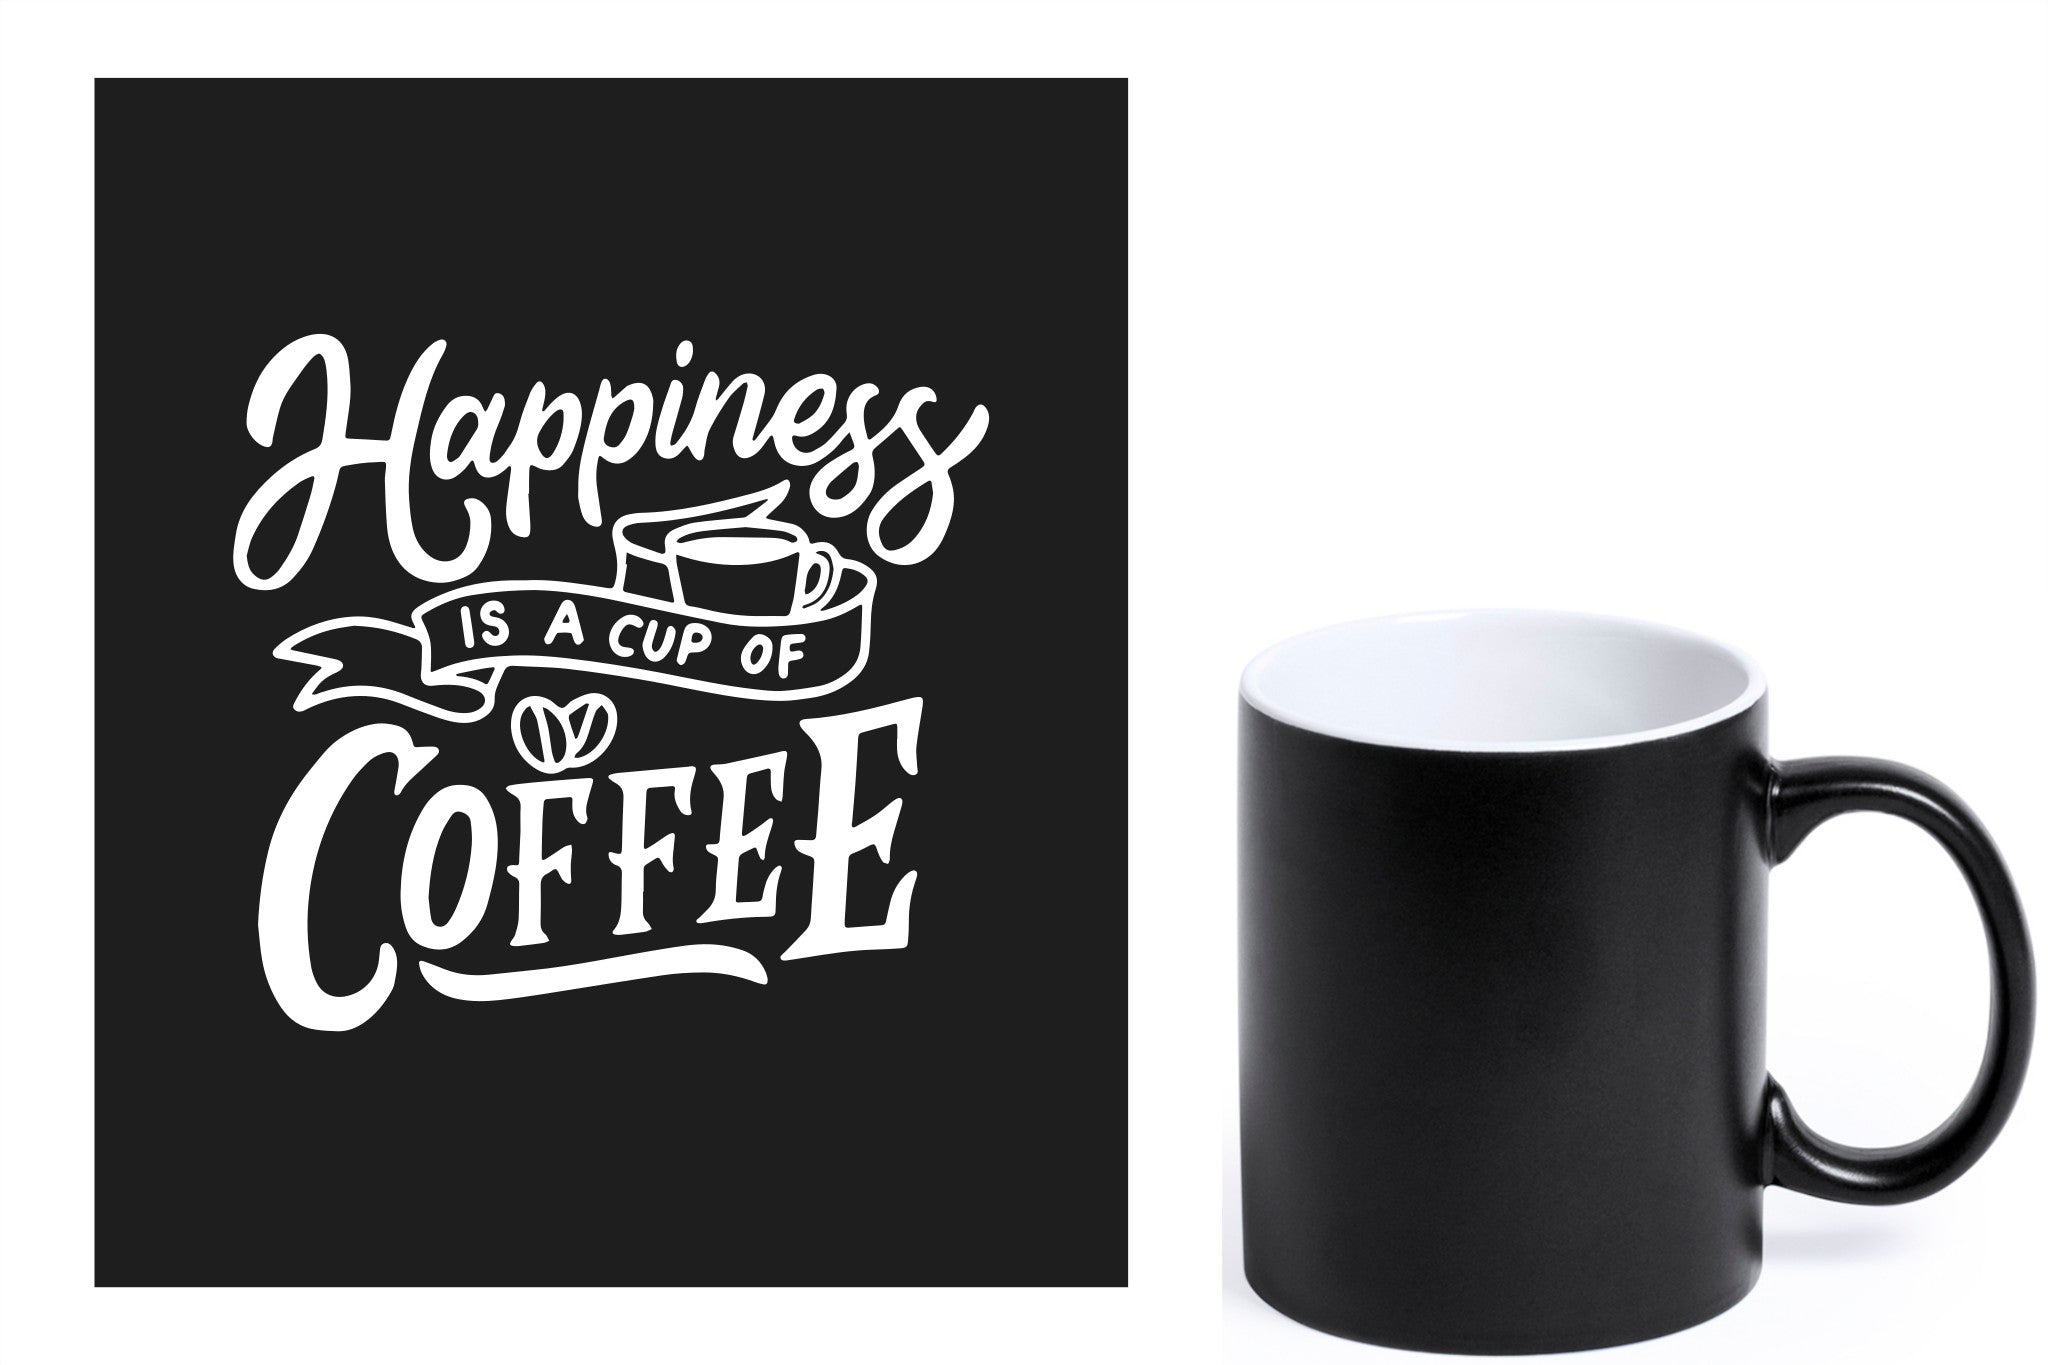 zwarte keramische mok met witte gravure  'Happiness is a cup of coffee'.